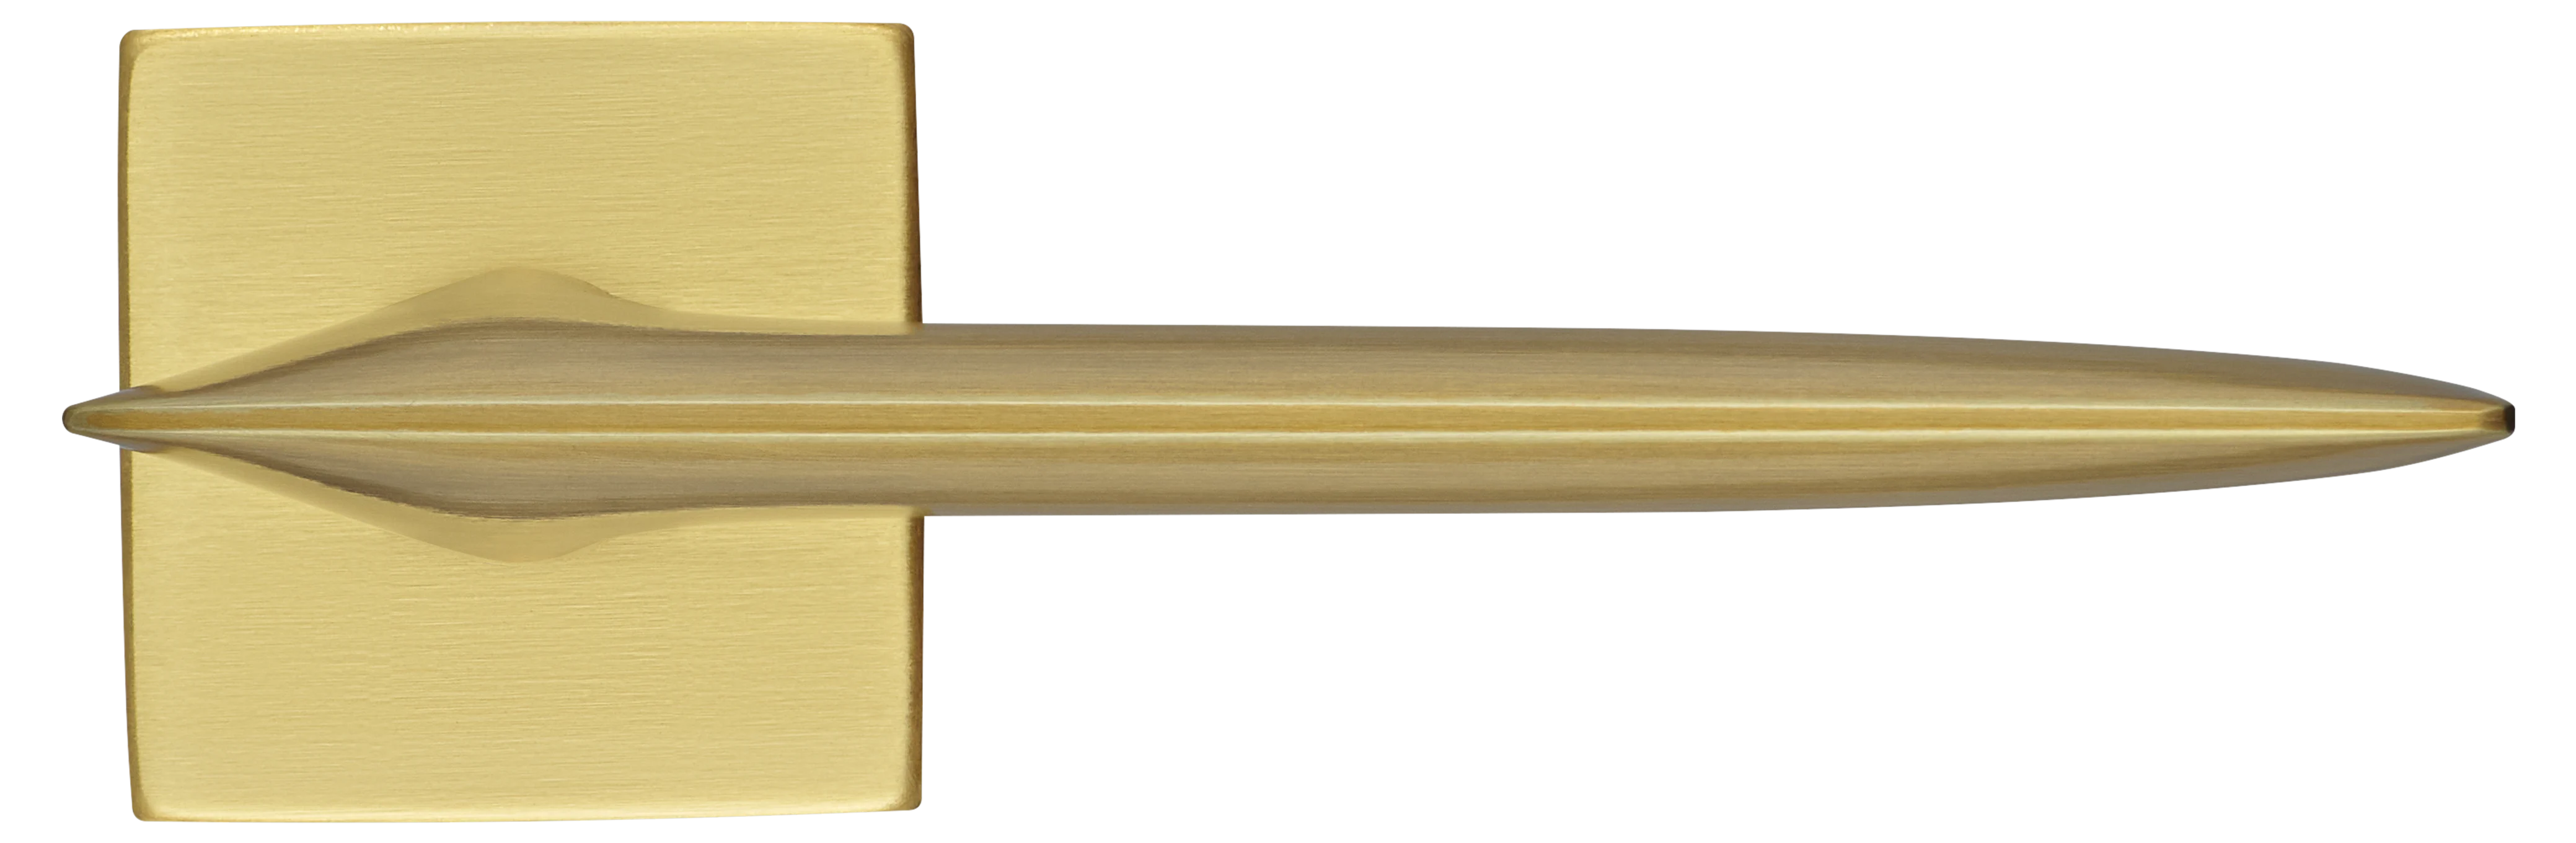 GALACTIC S5 OSA, ручка дверная, цвет -  матовое золото фото купить в Воронеже